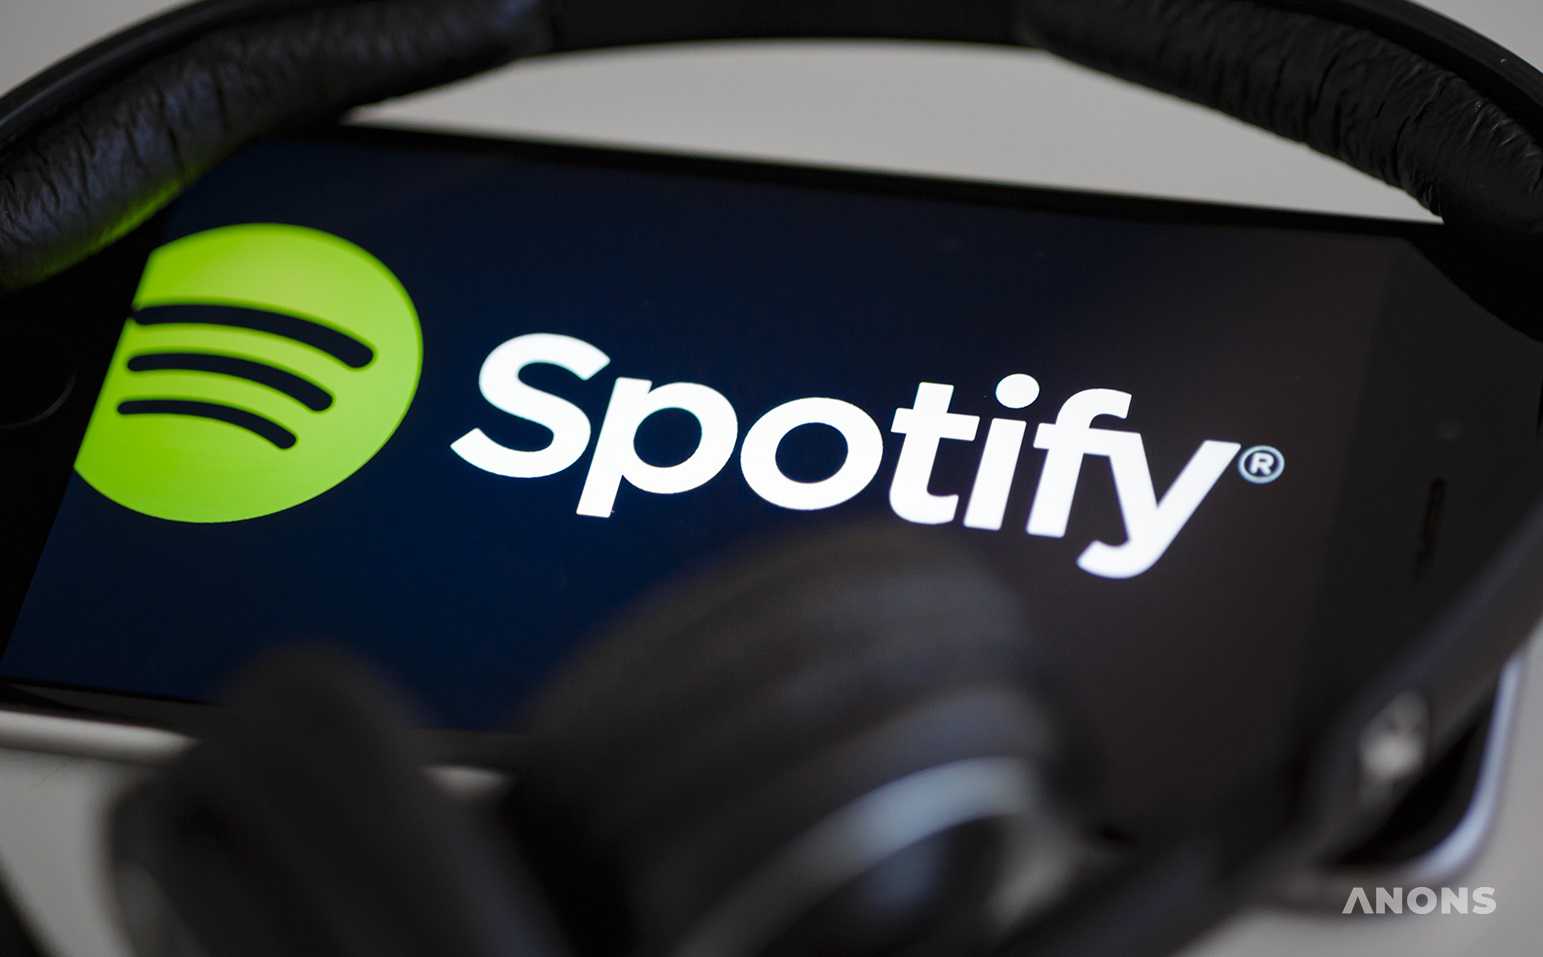 Музыкальный сервис Spotify объявил самых популярных исполнителей 2021 года